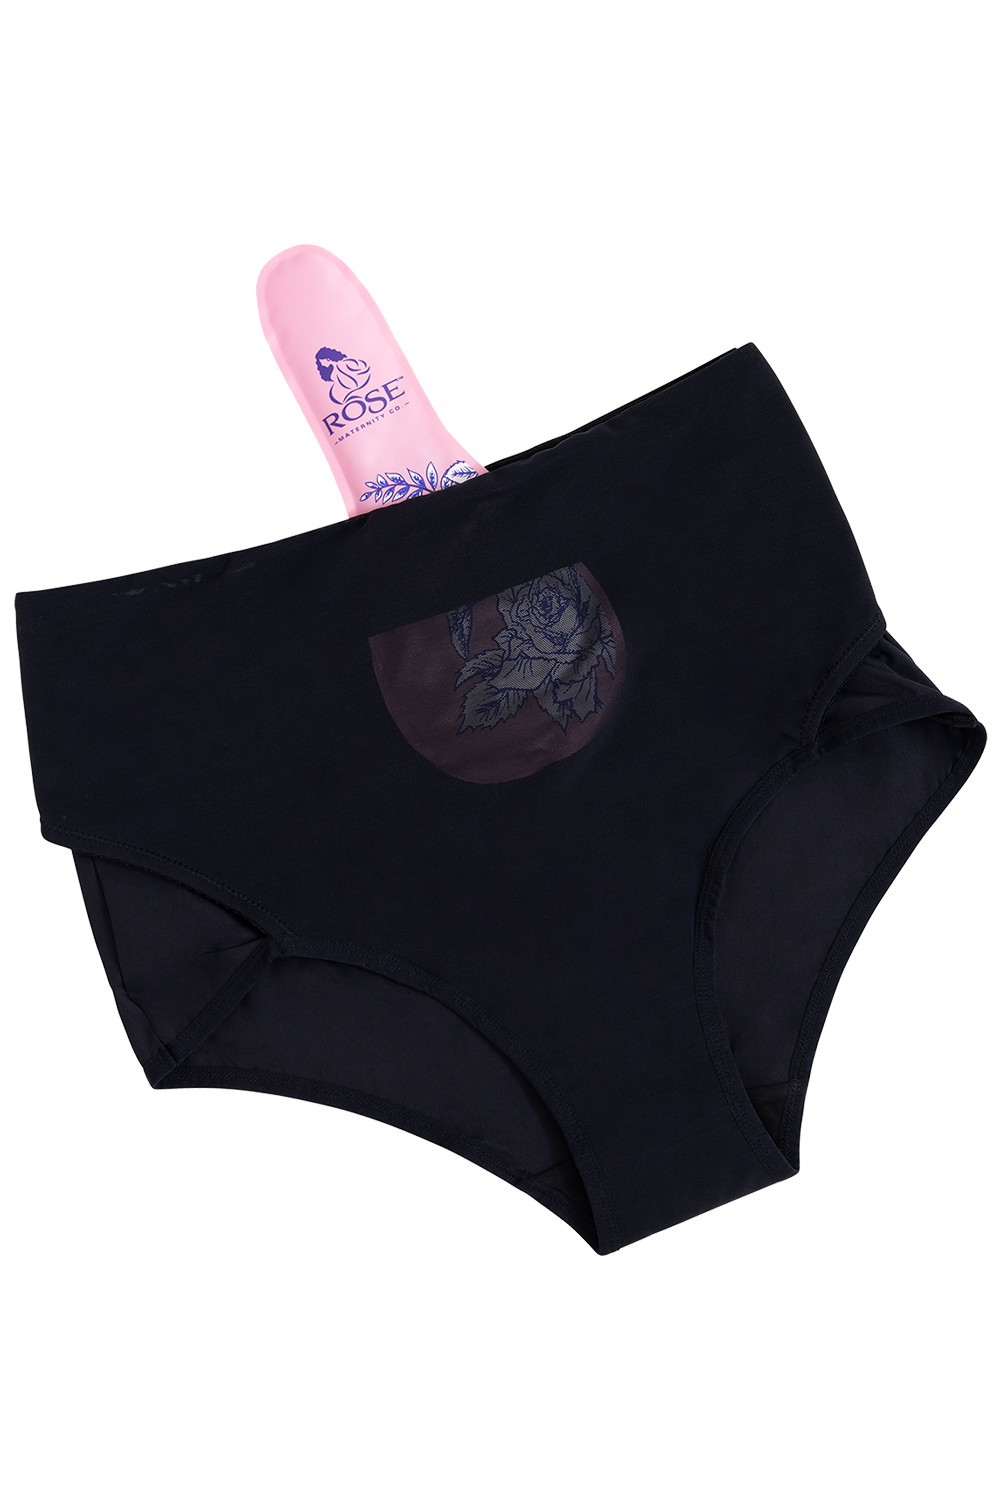 RoseRelief™ Postpartum Recovery Underwear